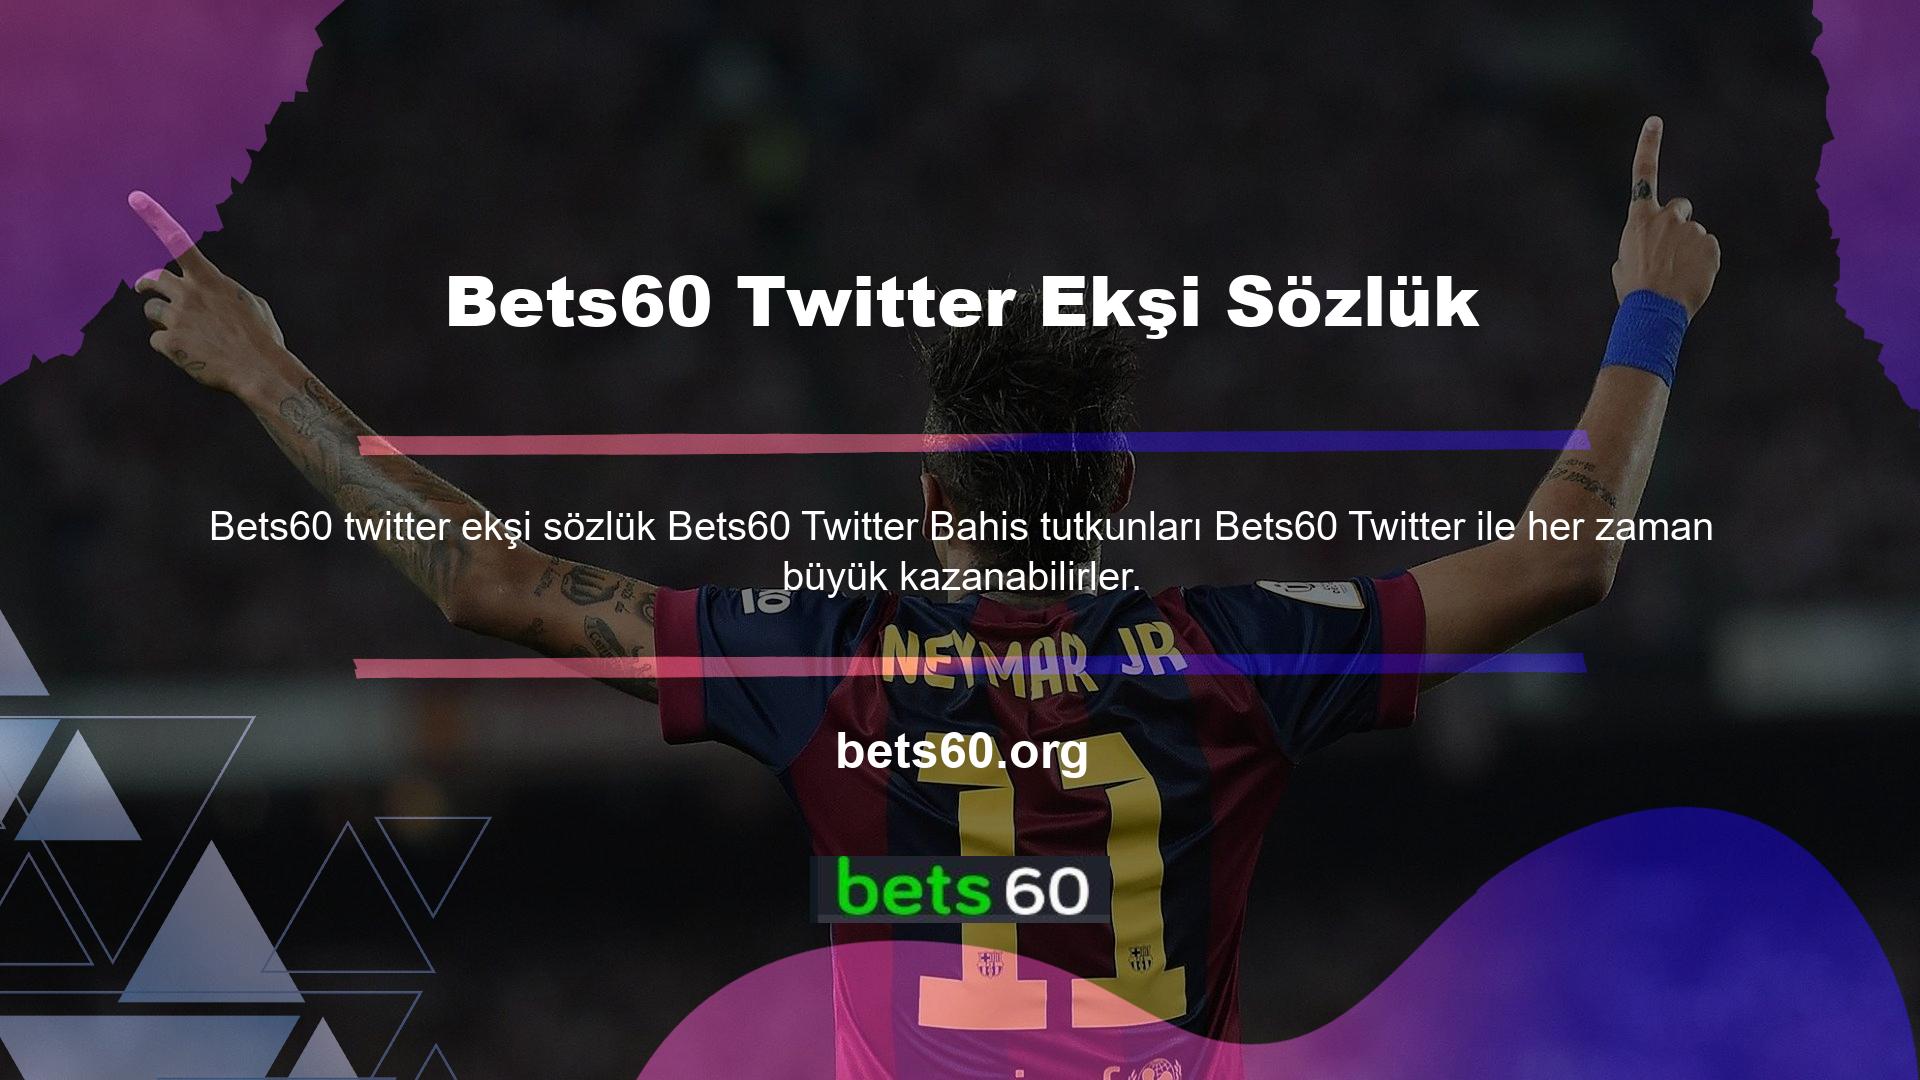 Bets60 Twitter Ekşi Sözlük Twitter bahis sitesi aynı zamanda en güvenli bahis sitelerinden biridir